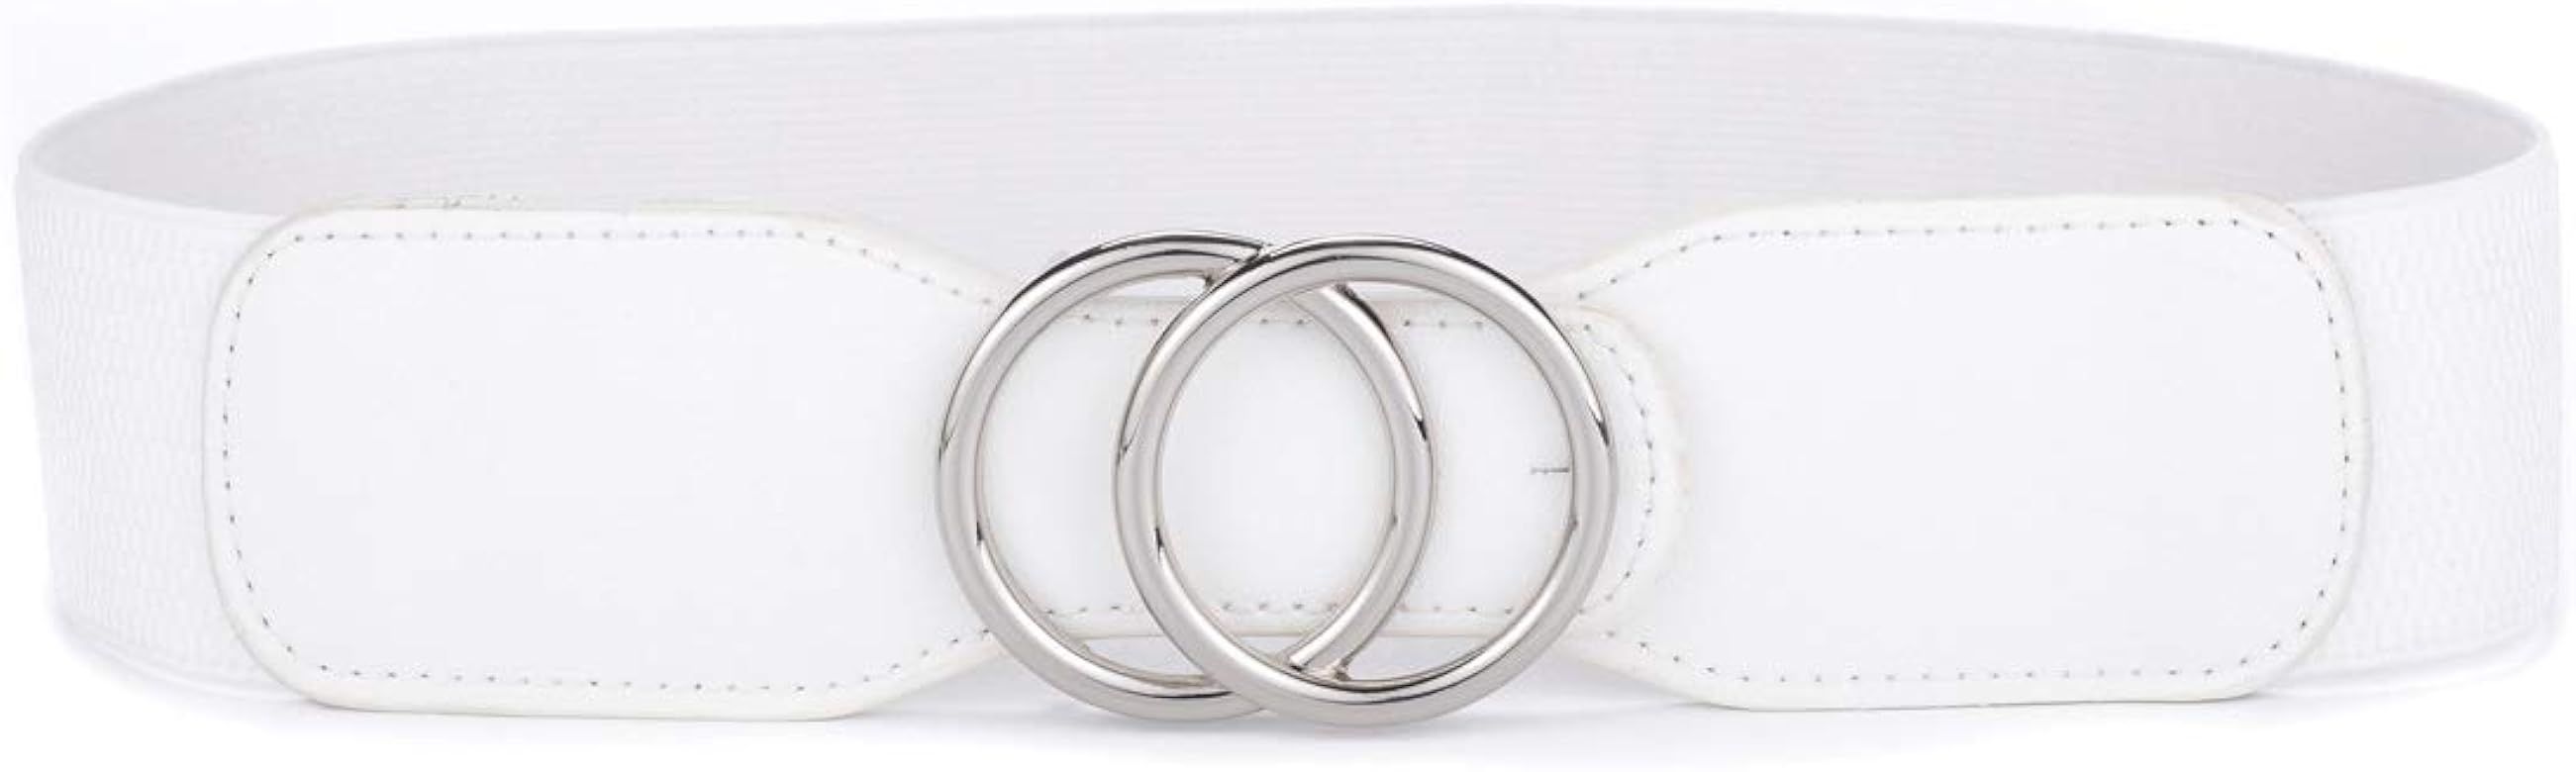 Beltox Women’s Elastic Stretch Wide Waist Belts w Double Rings Gold/Silver Buckle … | Amazon (US)